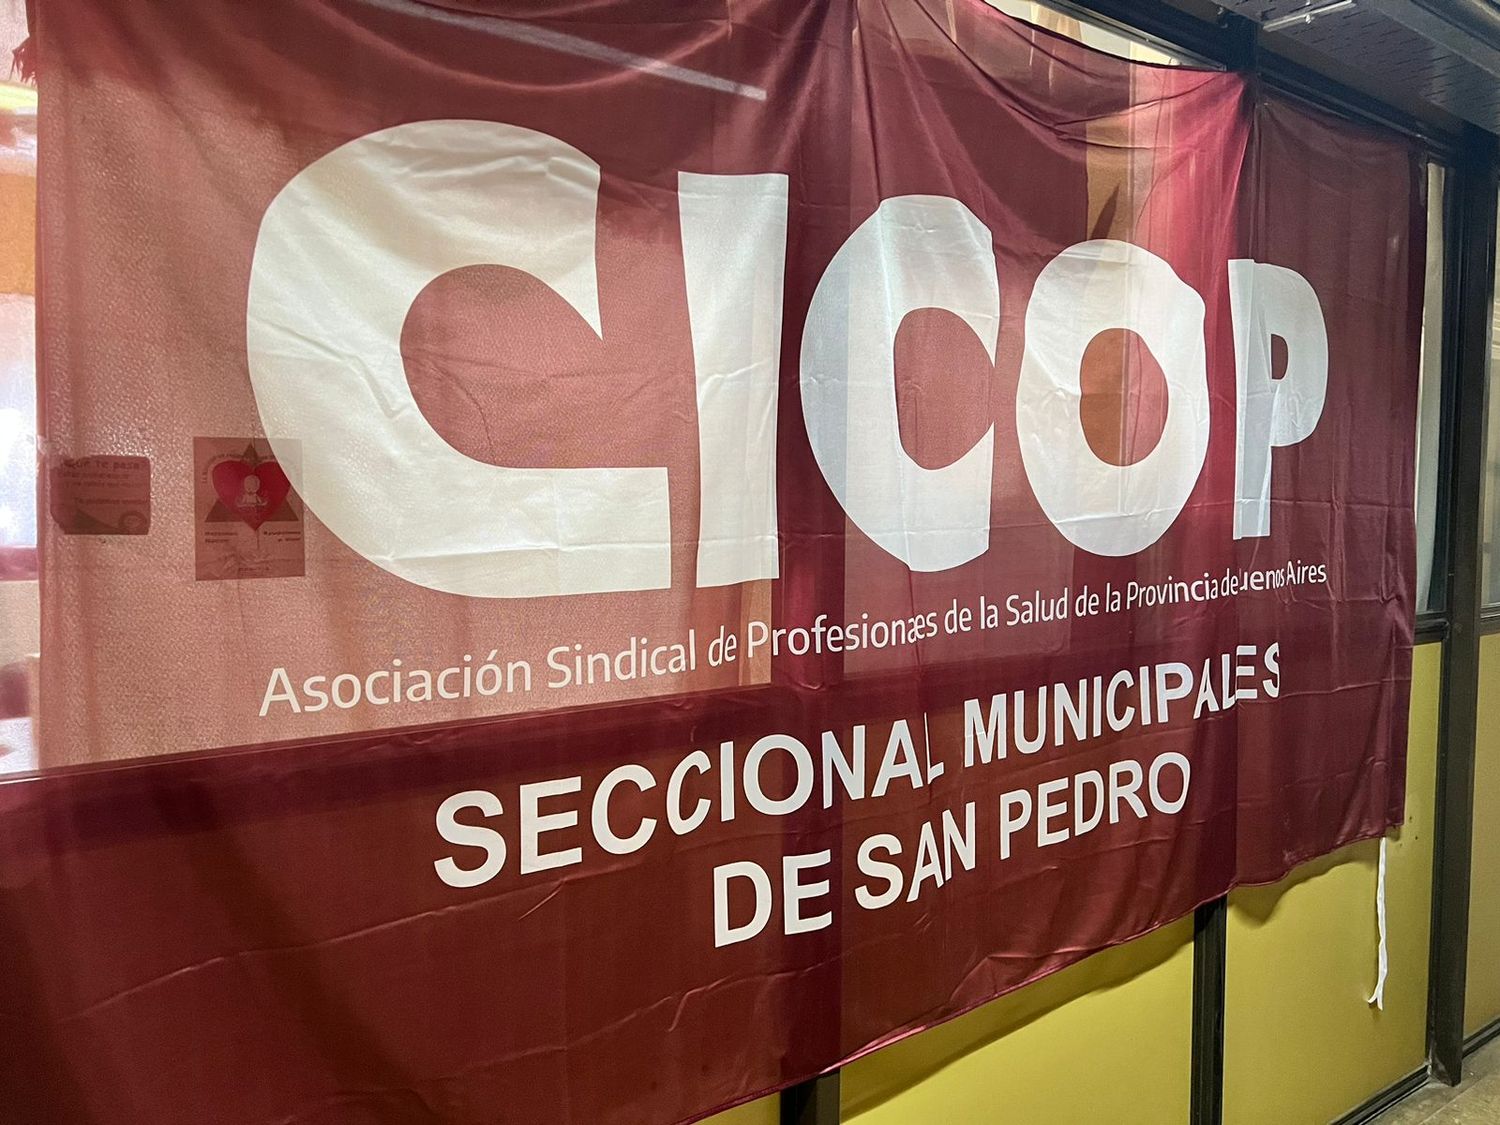 Los médicos de Cicop reclaman al Gobierno. Foto: Archivo La Opinión.